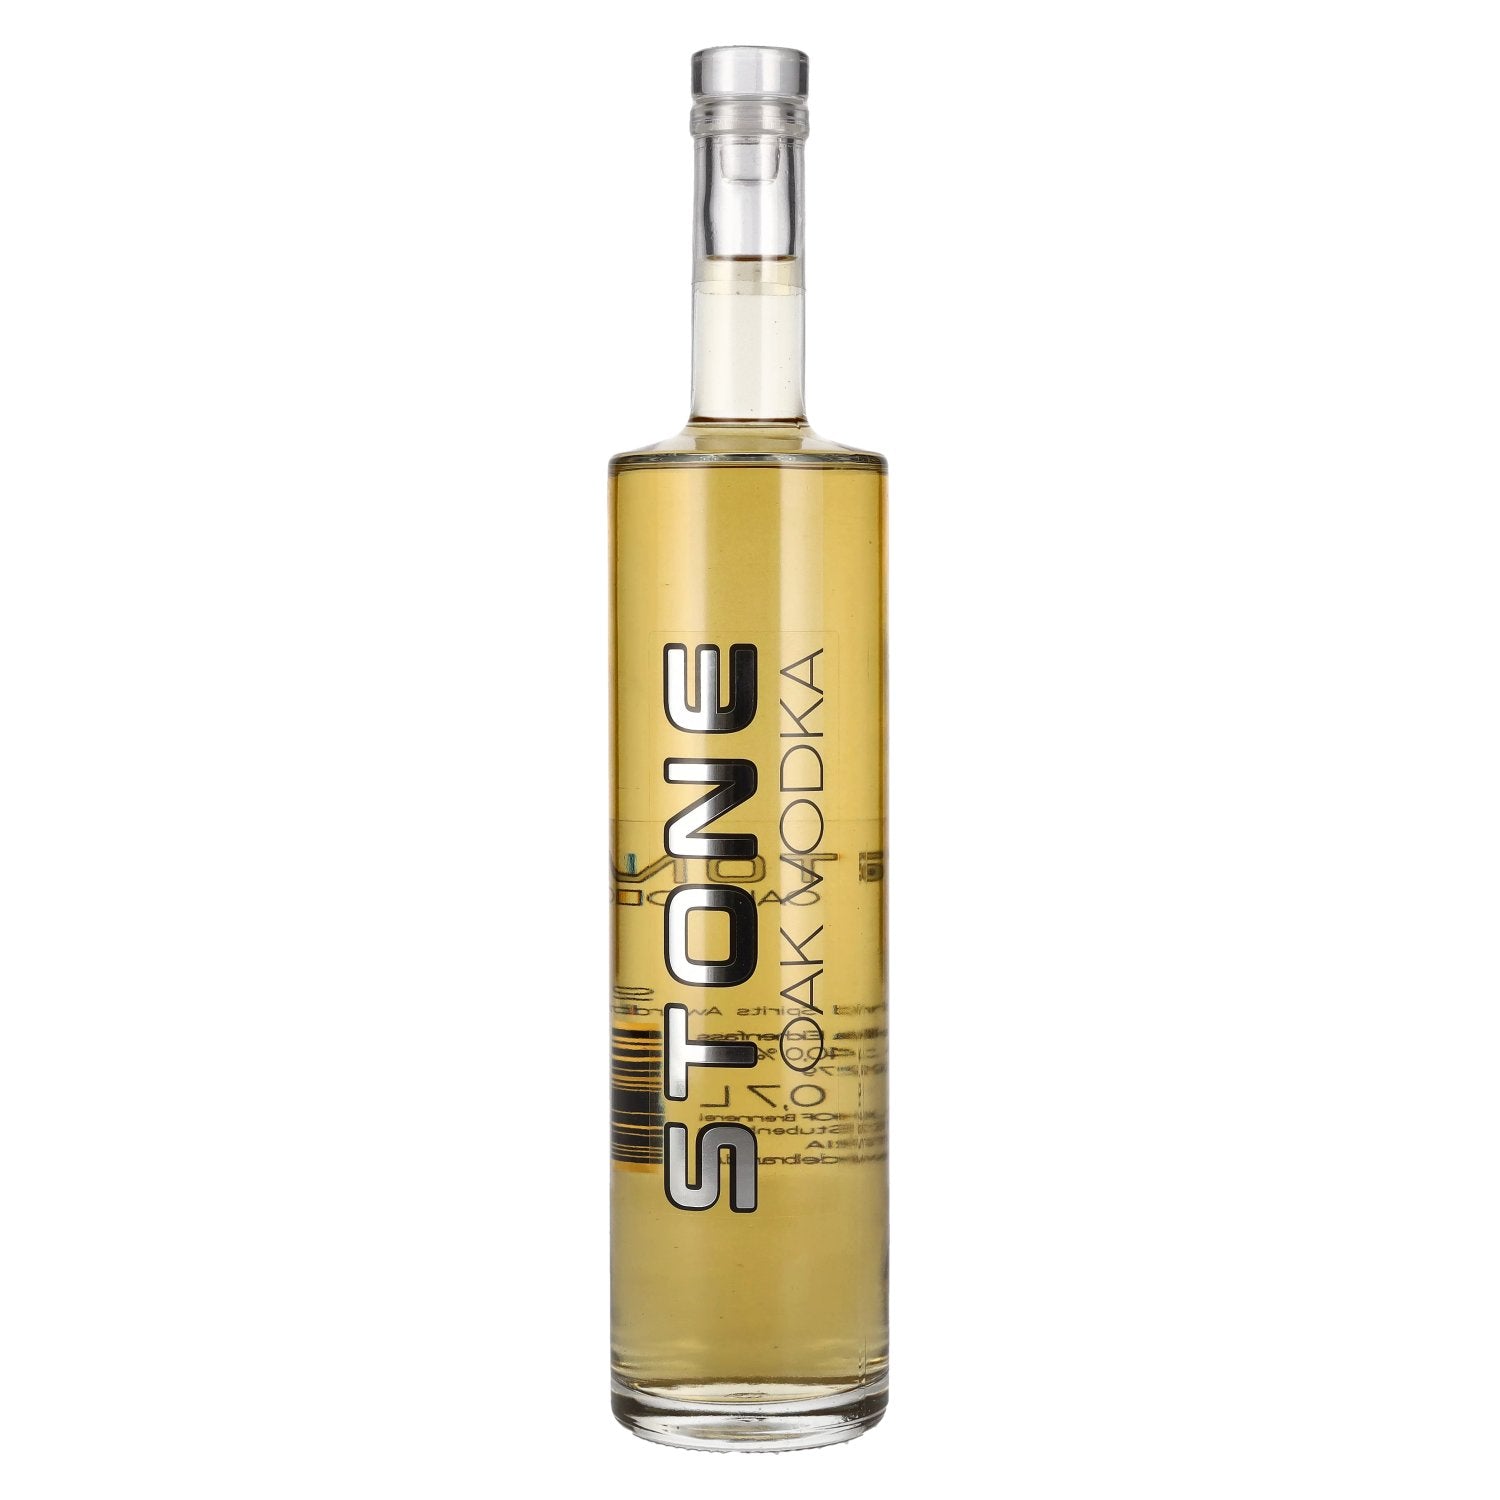 STONE Oak Vodka 40% Vol. 0,7l